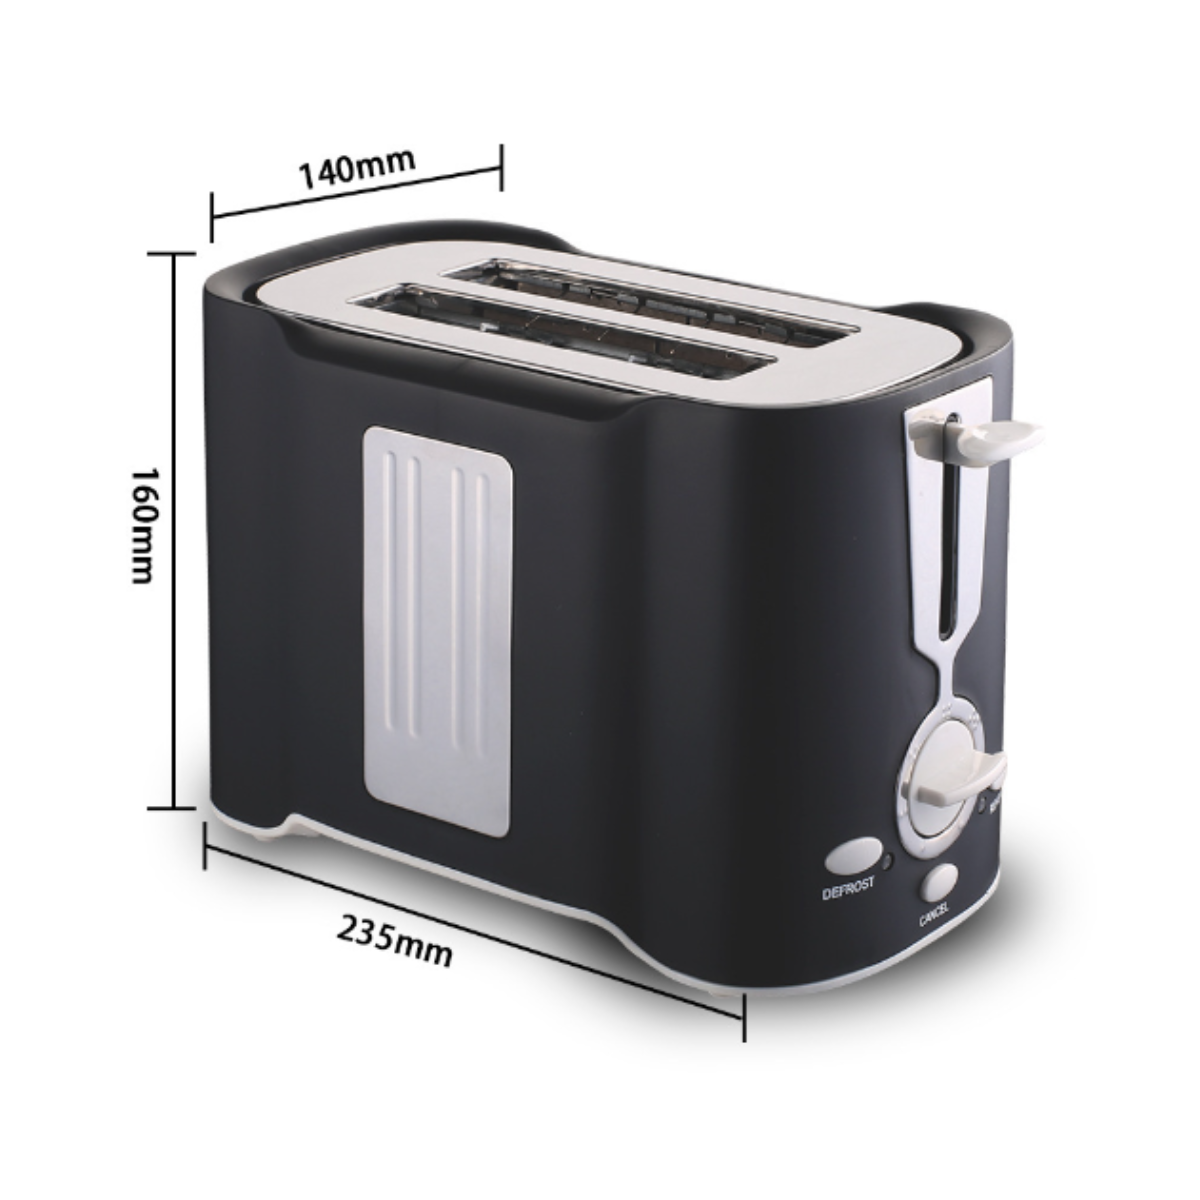 UWOT Kleiner Toaster: und - Perfekt für für Vollautomatischer Frühstücksofen zuhause Toasts! Brotmaschine Brote kleine